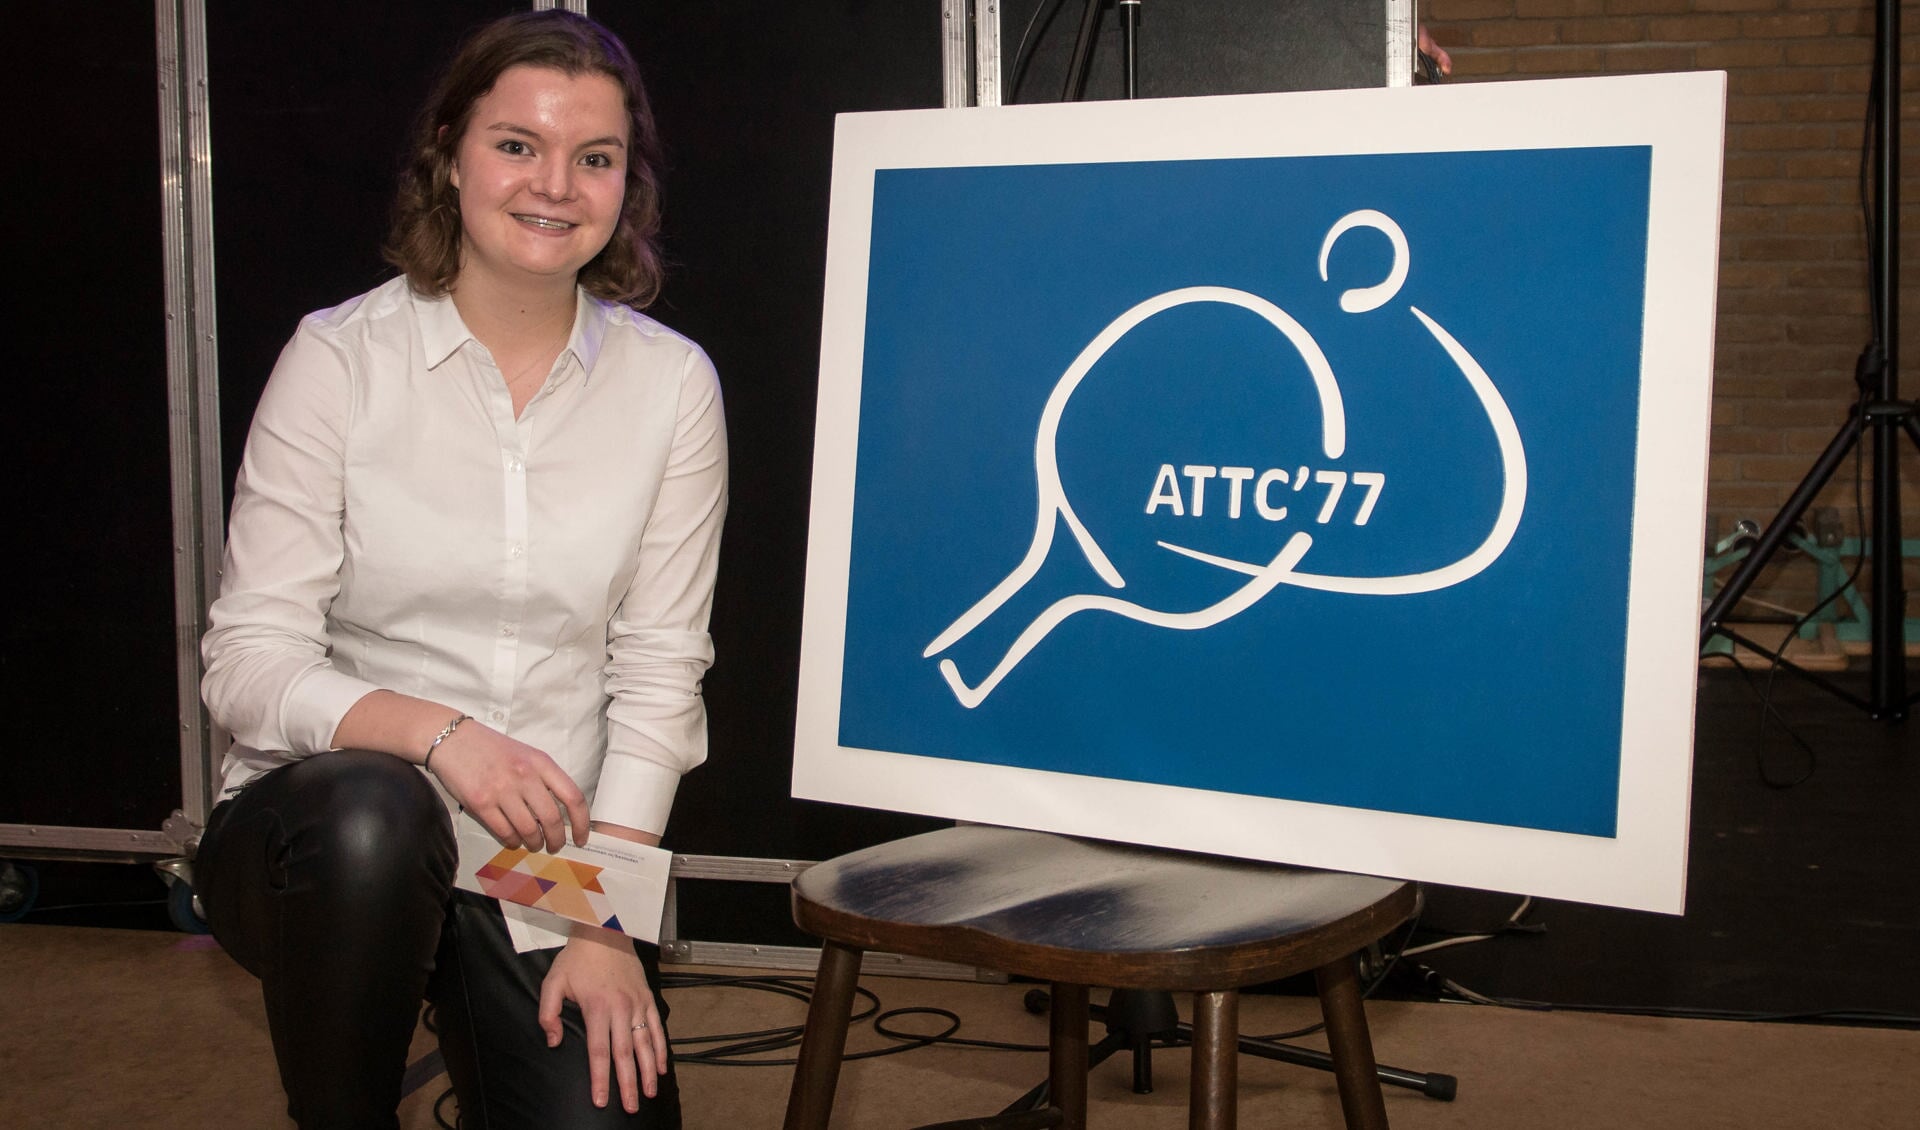 Dorette van den Elsen met het nieuwe logo van ATTC'77